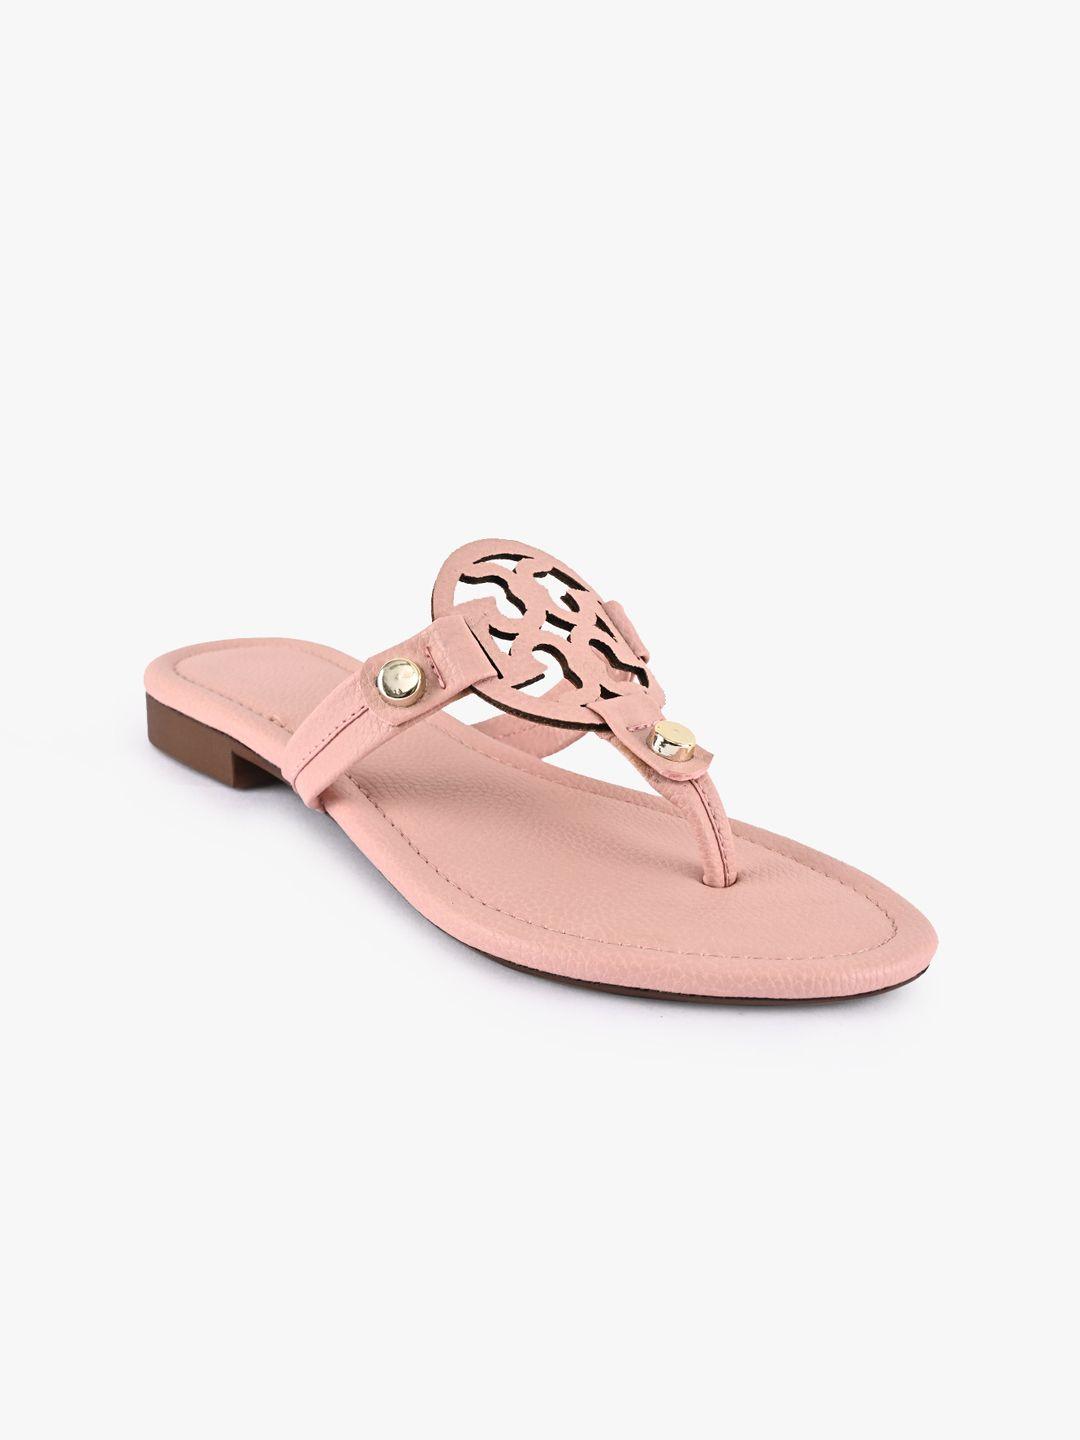 buckleup women pink solid open toe flats